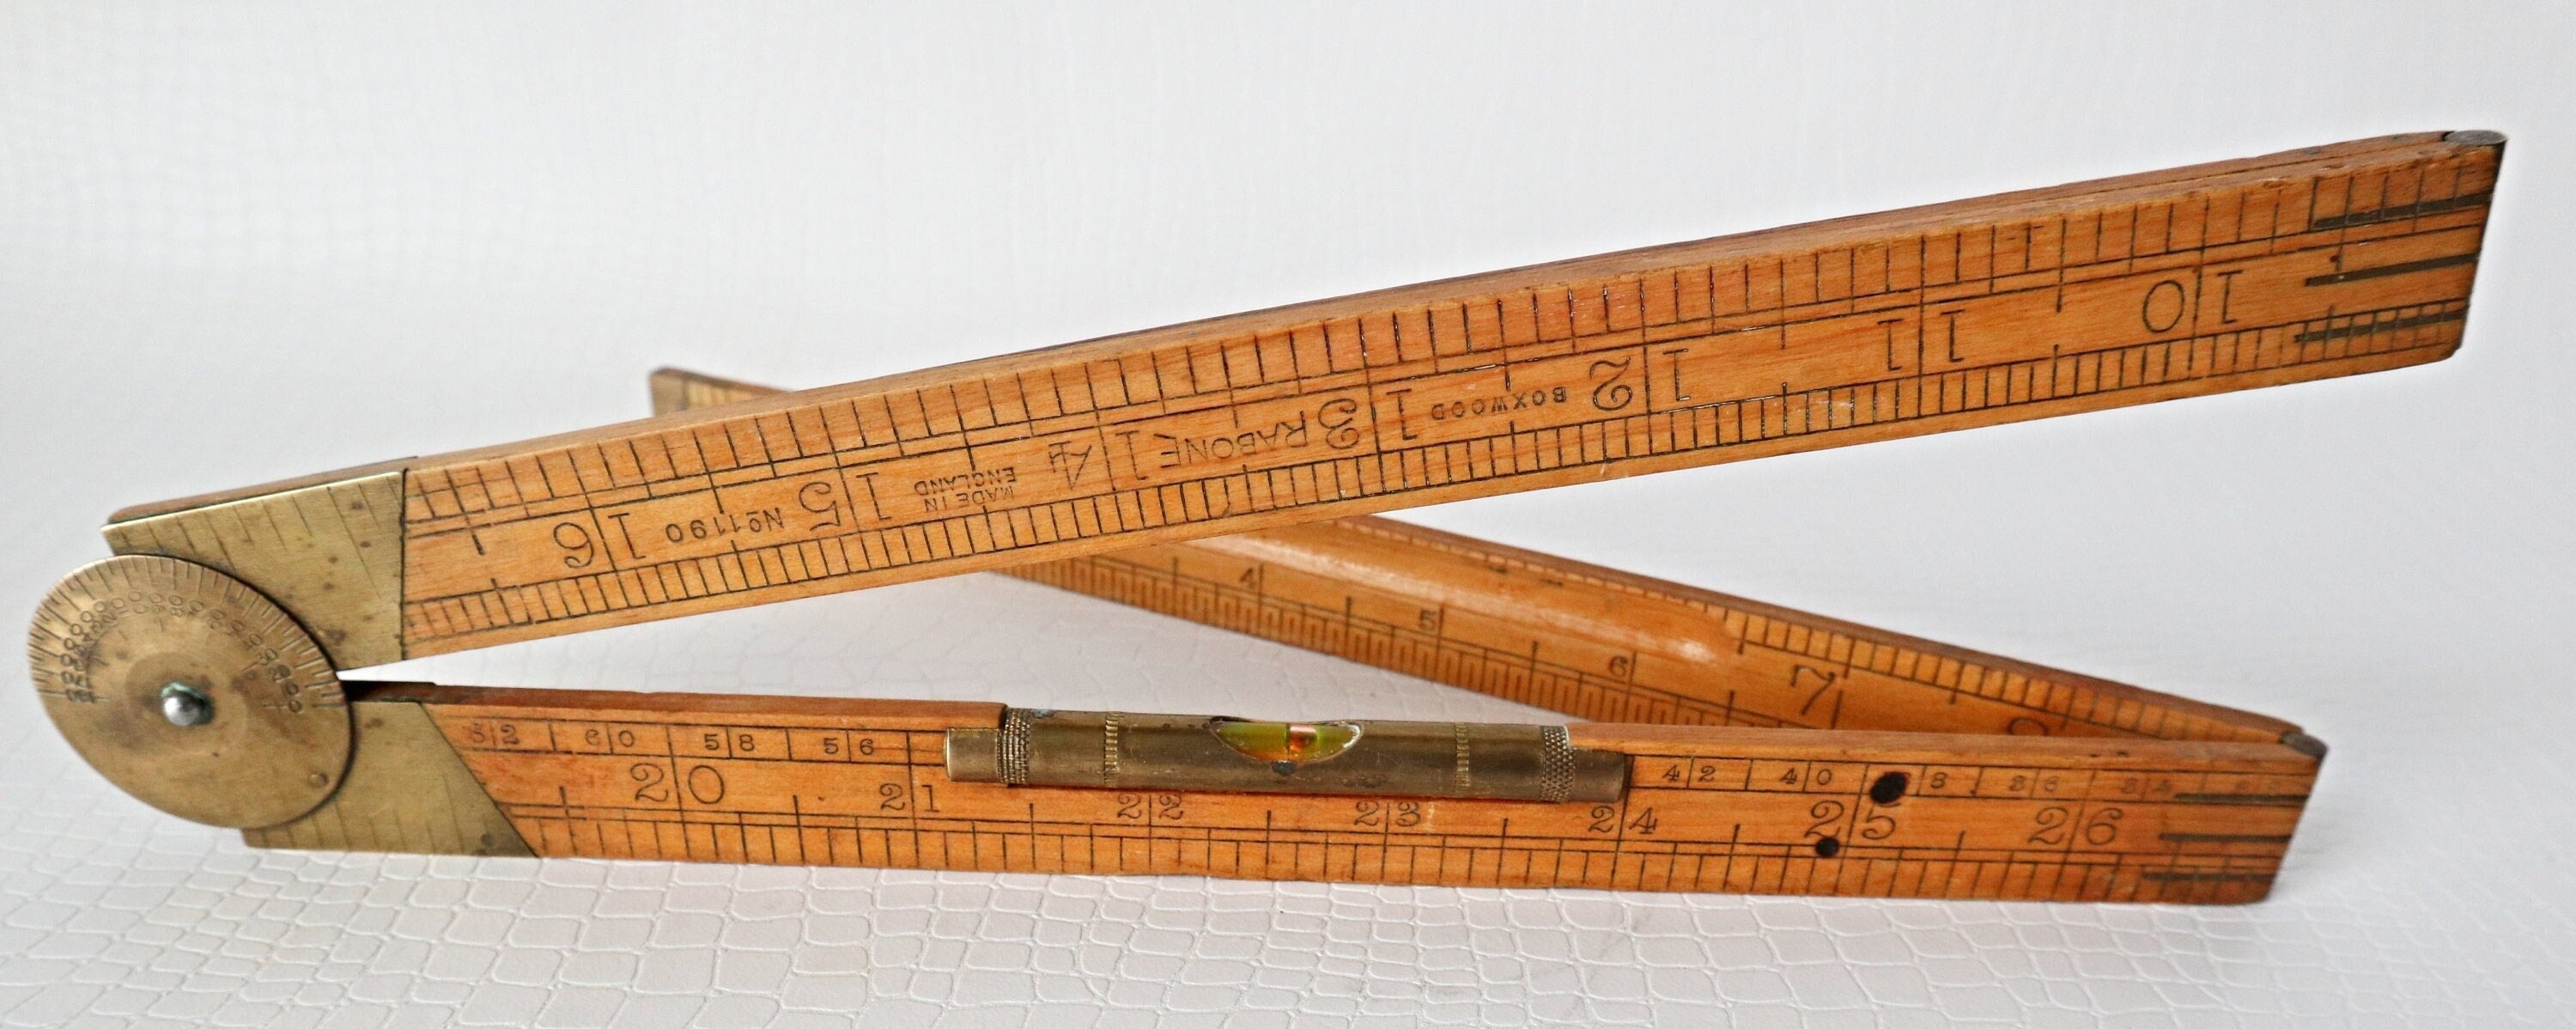 Vintage Folding Boxwood Ruler